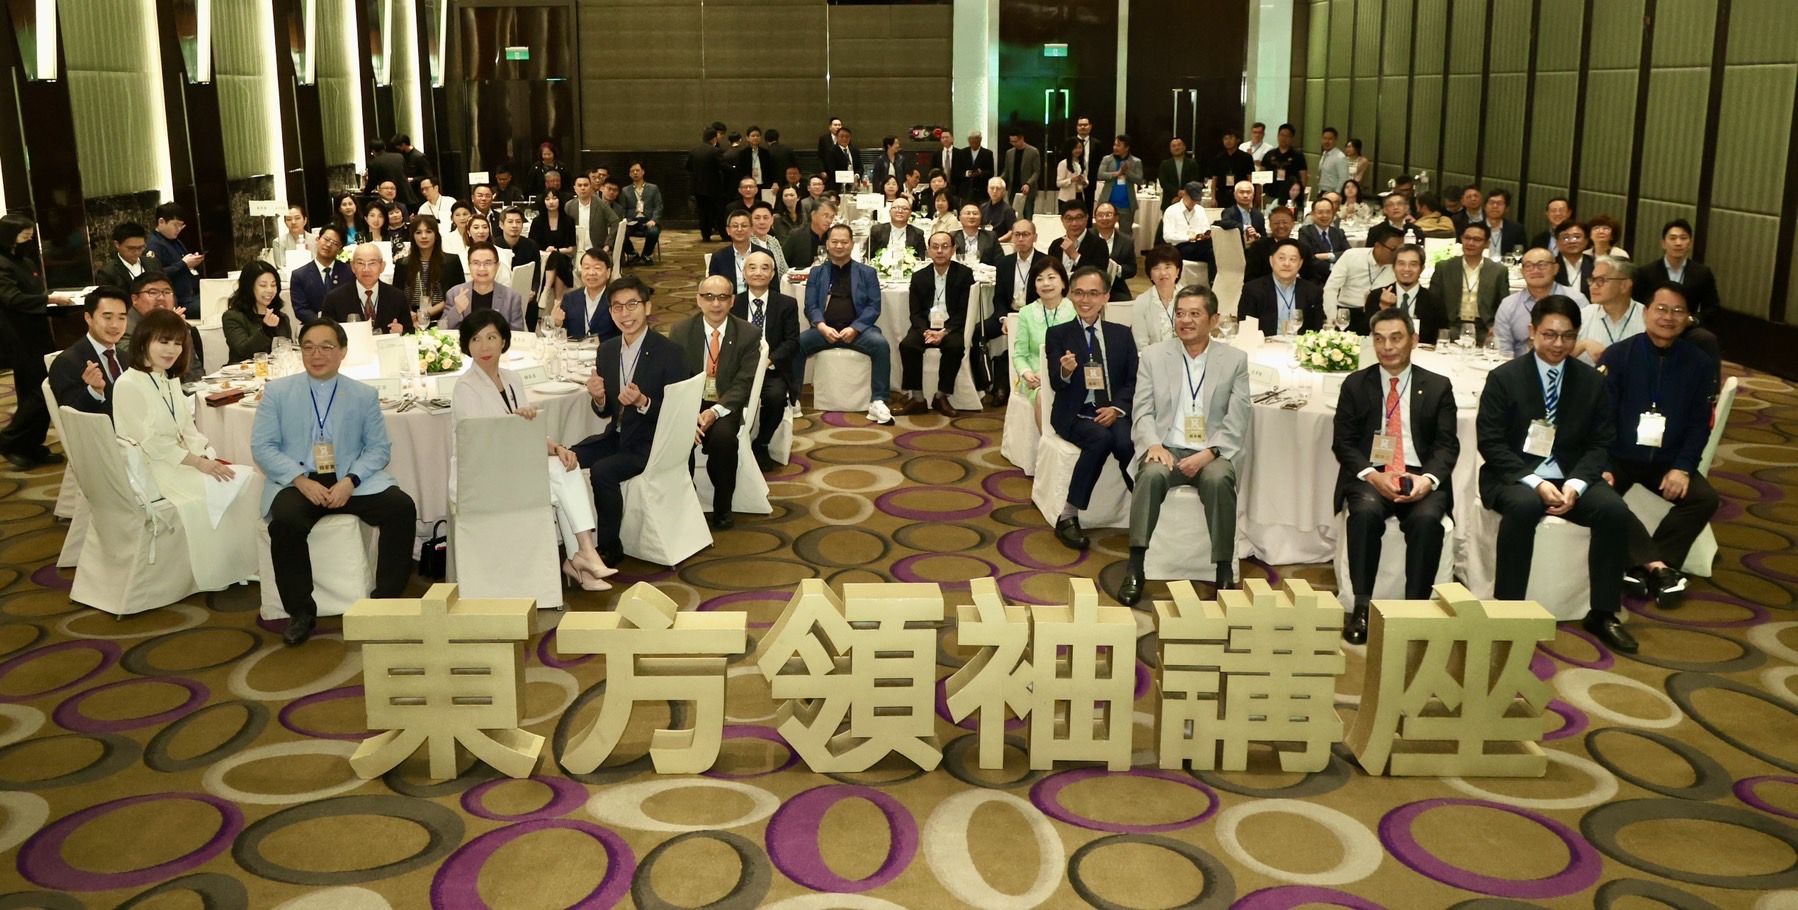 东方领袖讲座许多知名的企业家及二代都来聆听「动荡的时代、台湾企业的挑战」专题演讲。摄影/陈正兴